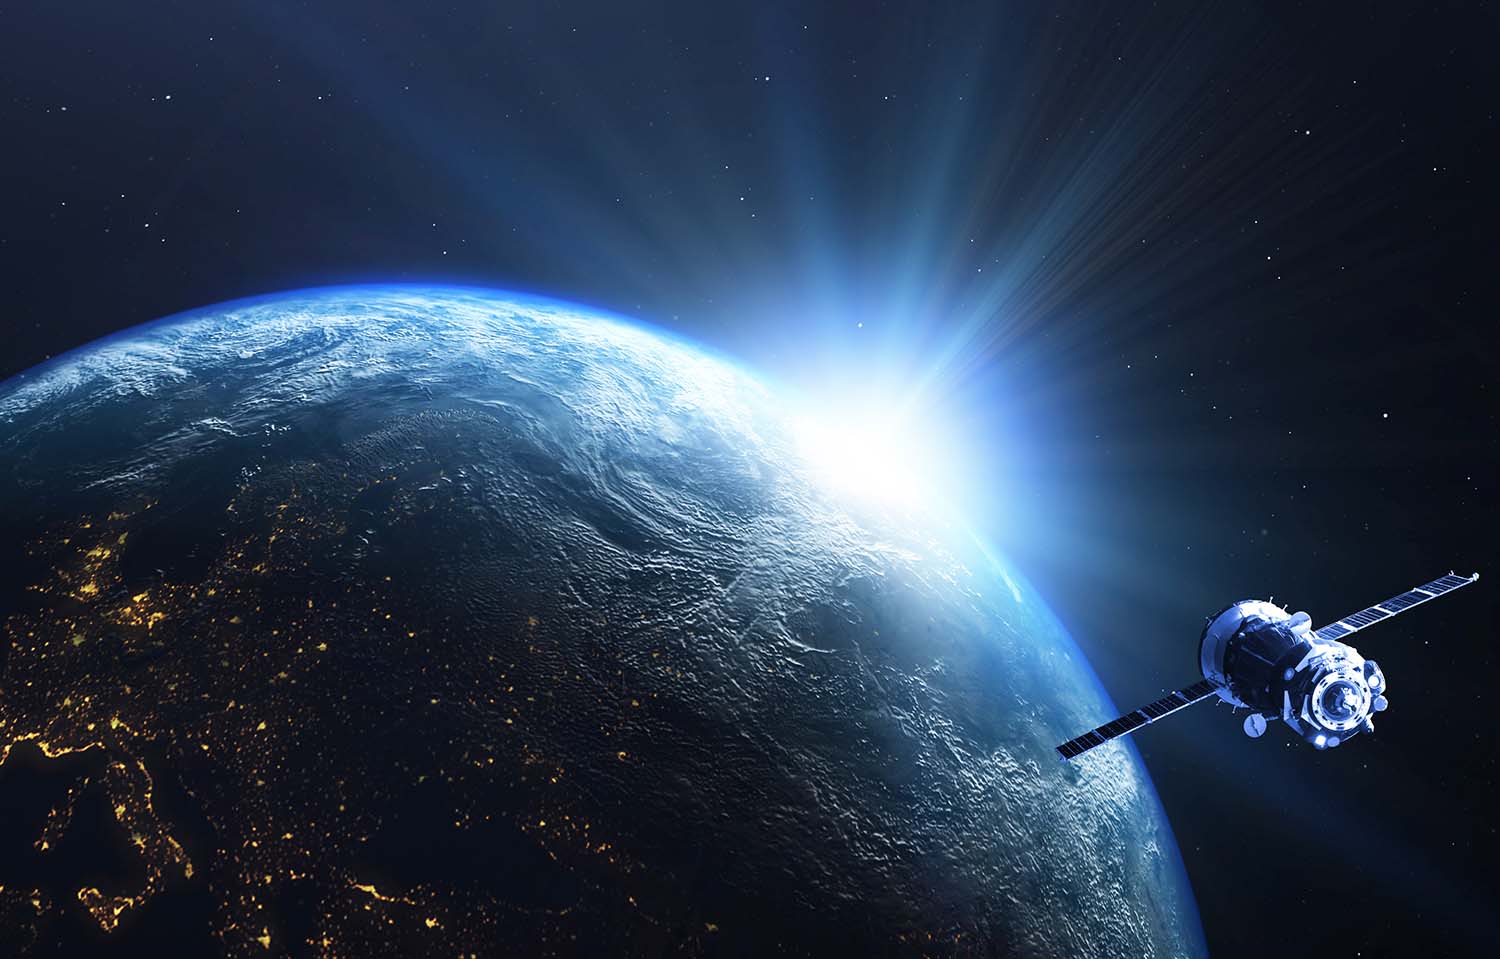 visão espacial do planeta Terra, com o sol sendo mostrado parcialmente no fundo e um satélite em órbita.